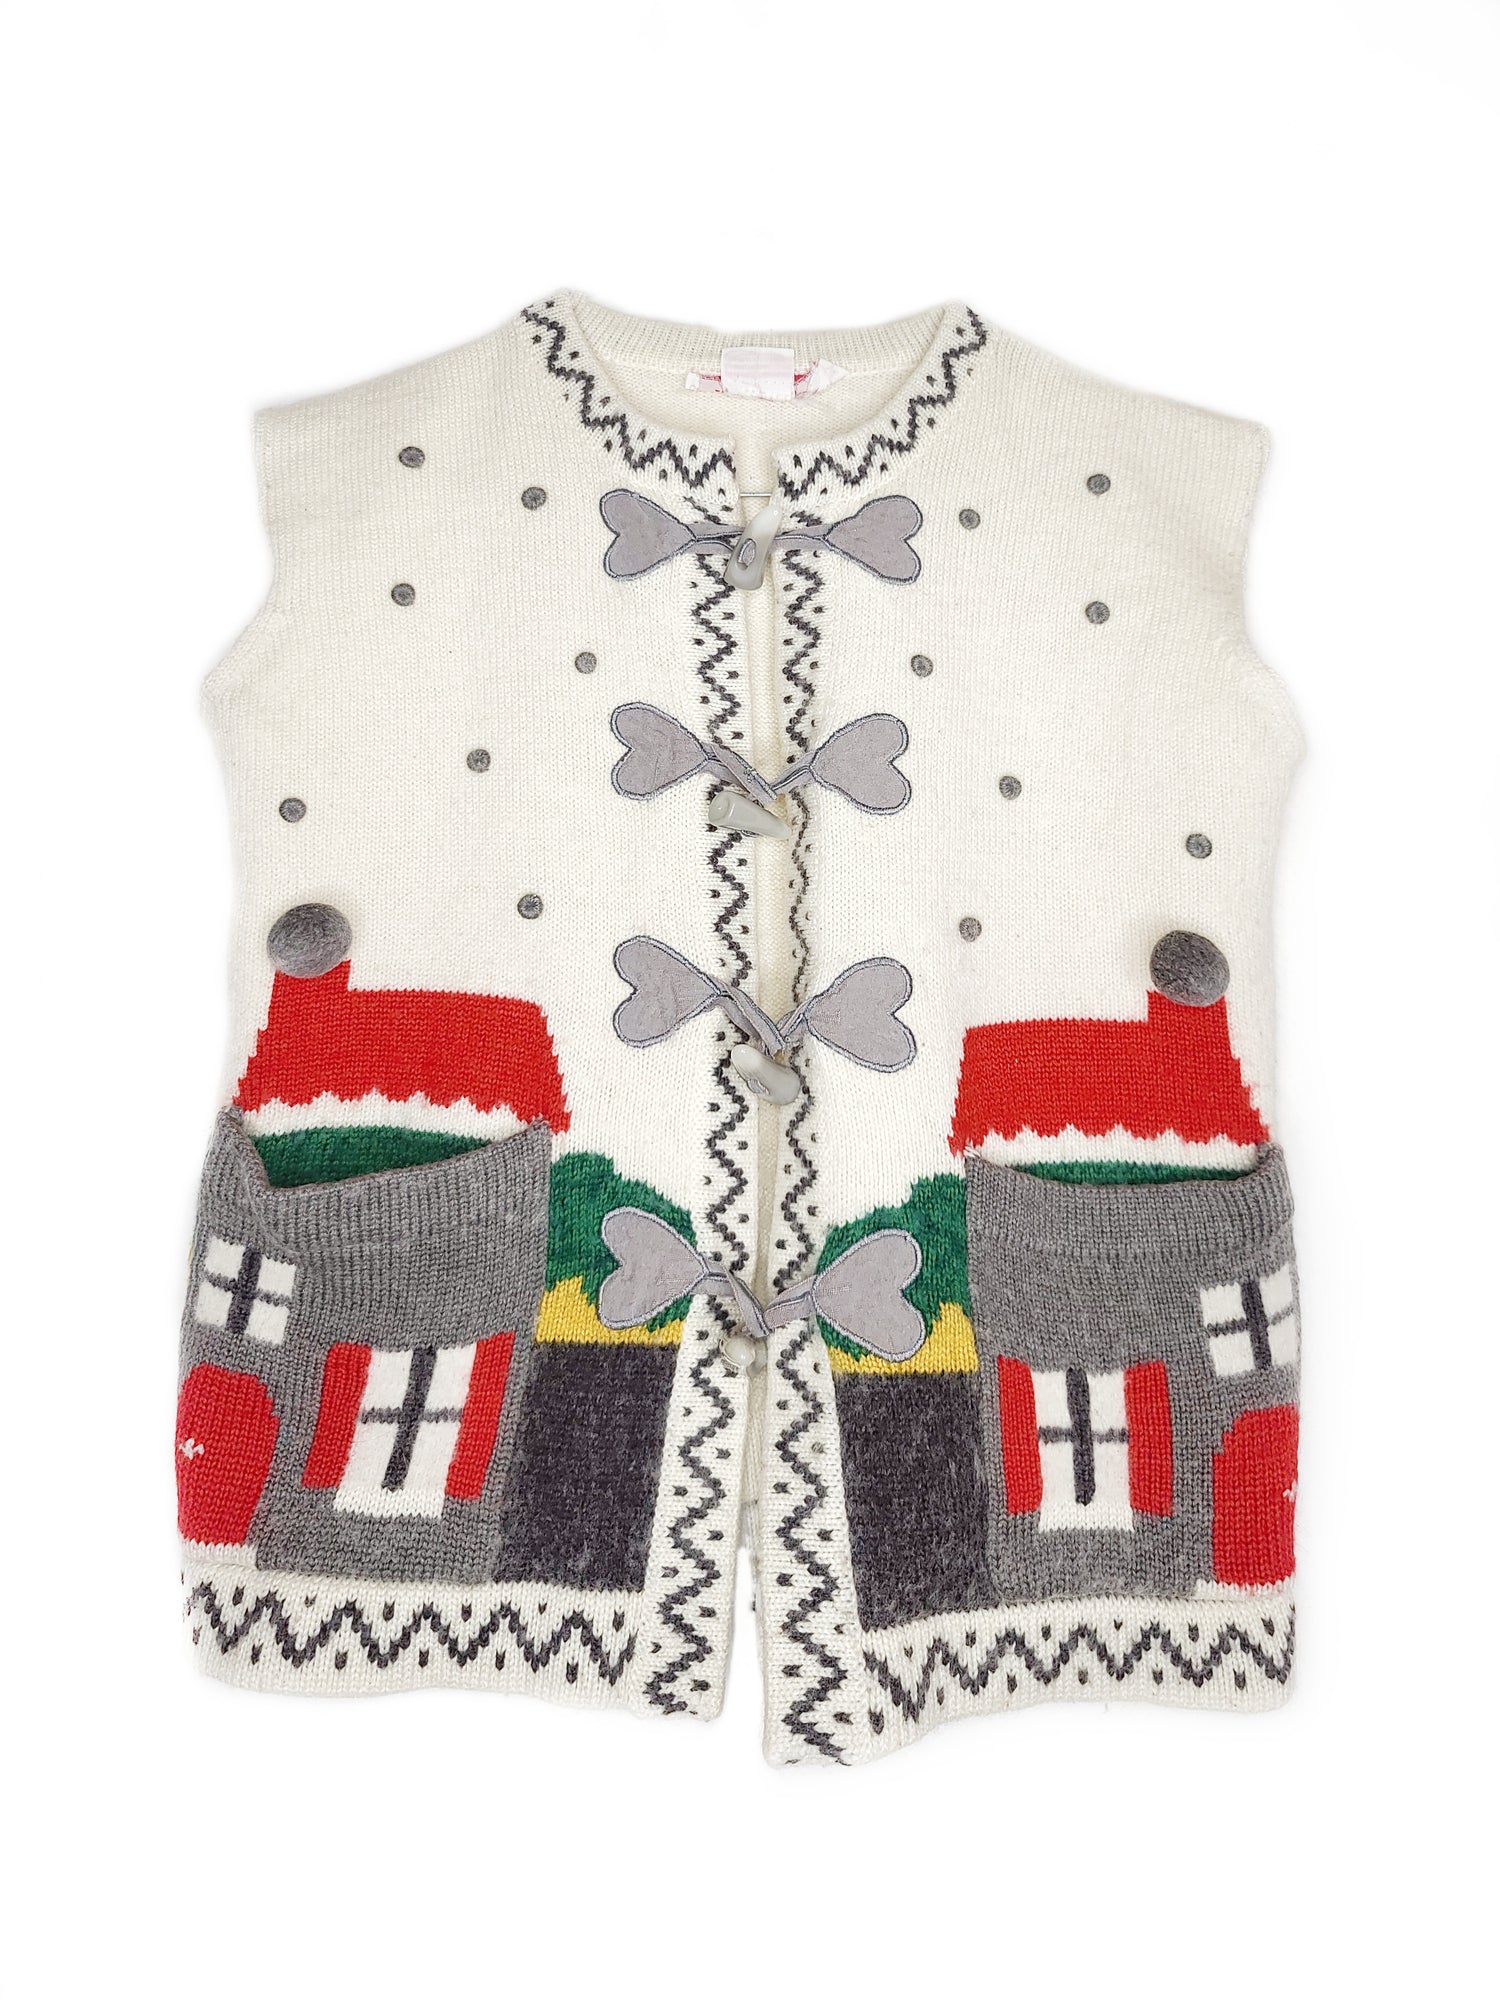 Pull vintage cute kawaii archive tricot crochet sans manches motif maison coeur mignon pastel fancy cottage cottagecore